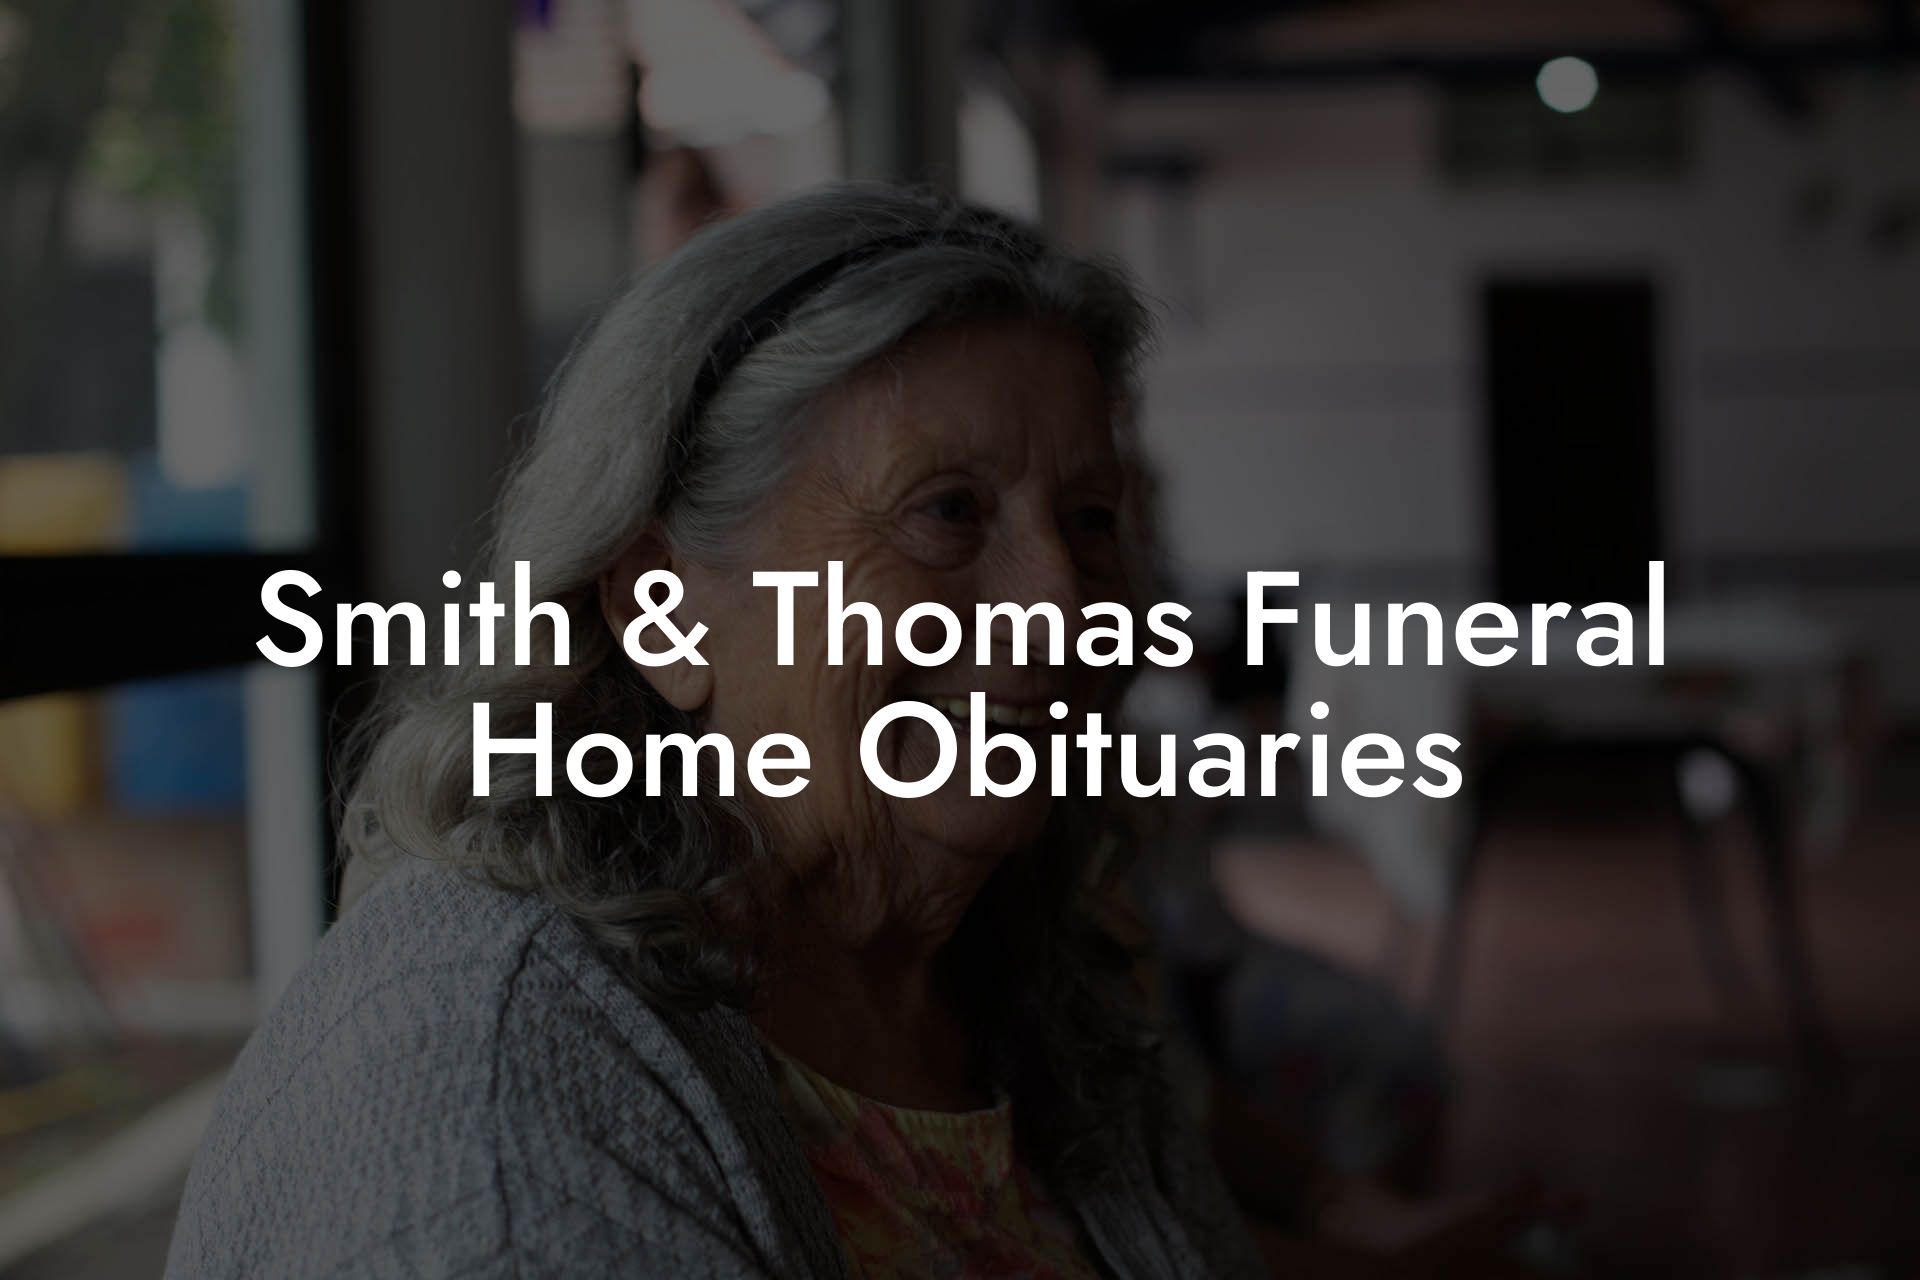 Smith & Thomas Funeral Home Obituaries